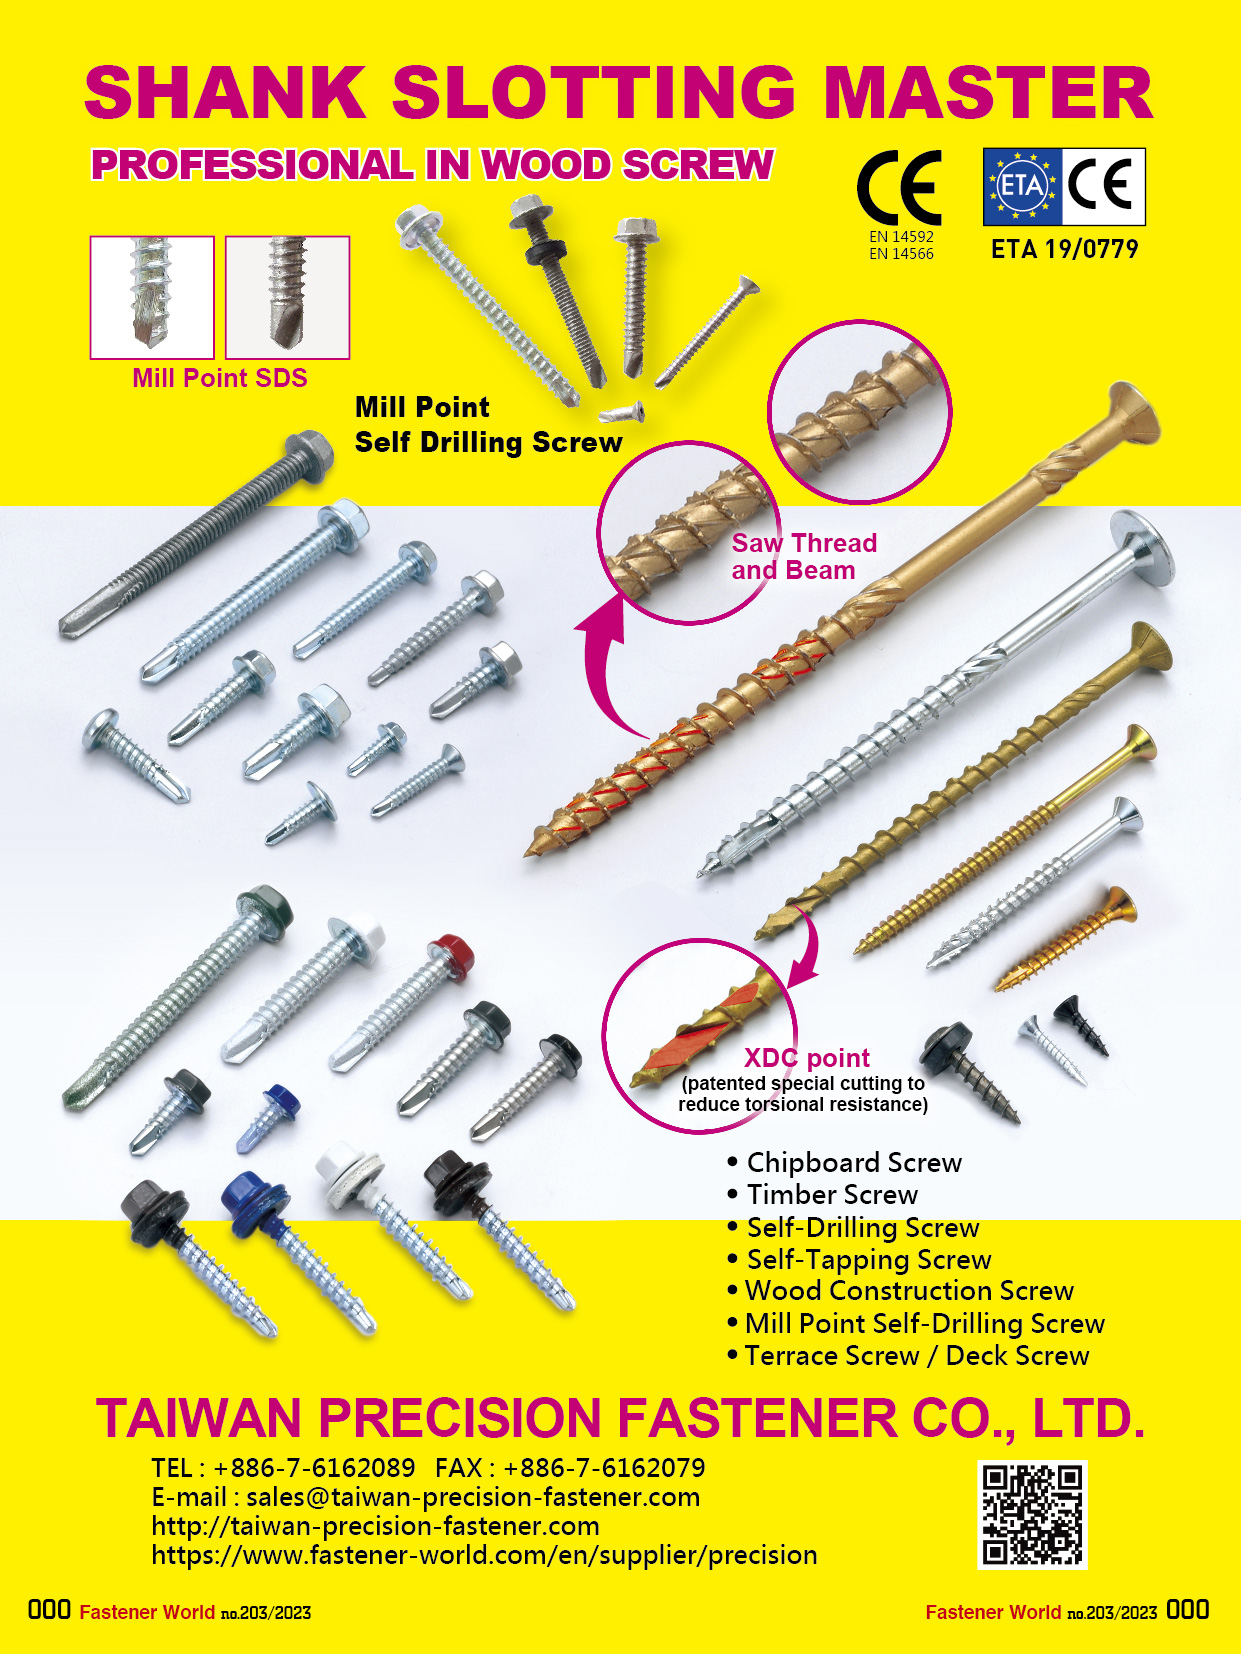 TAIWAN PRECISION FASTENER CO., LTD.